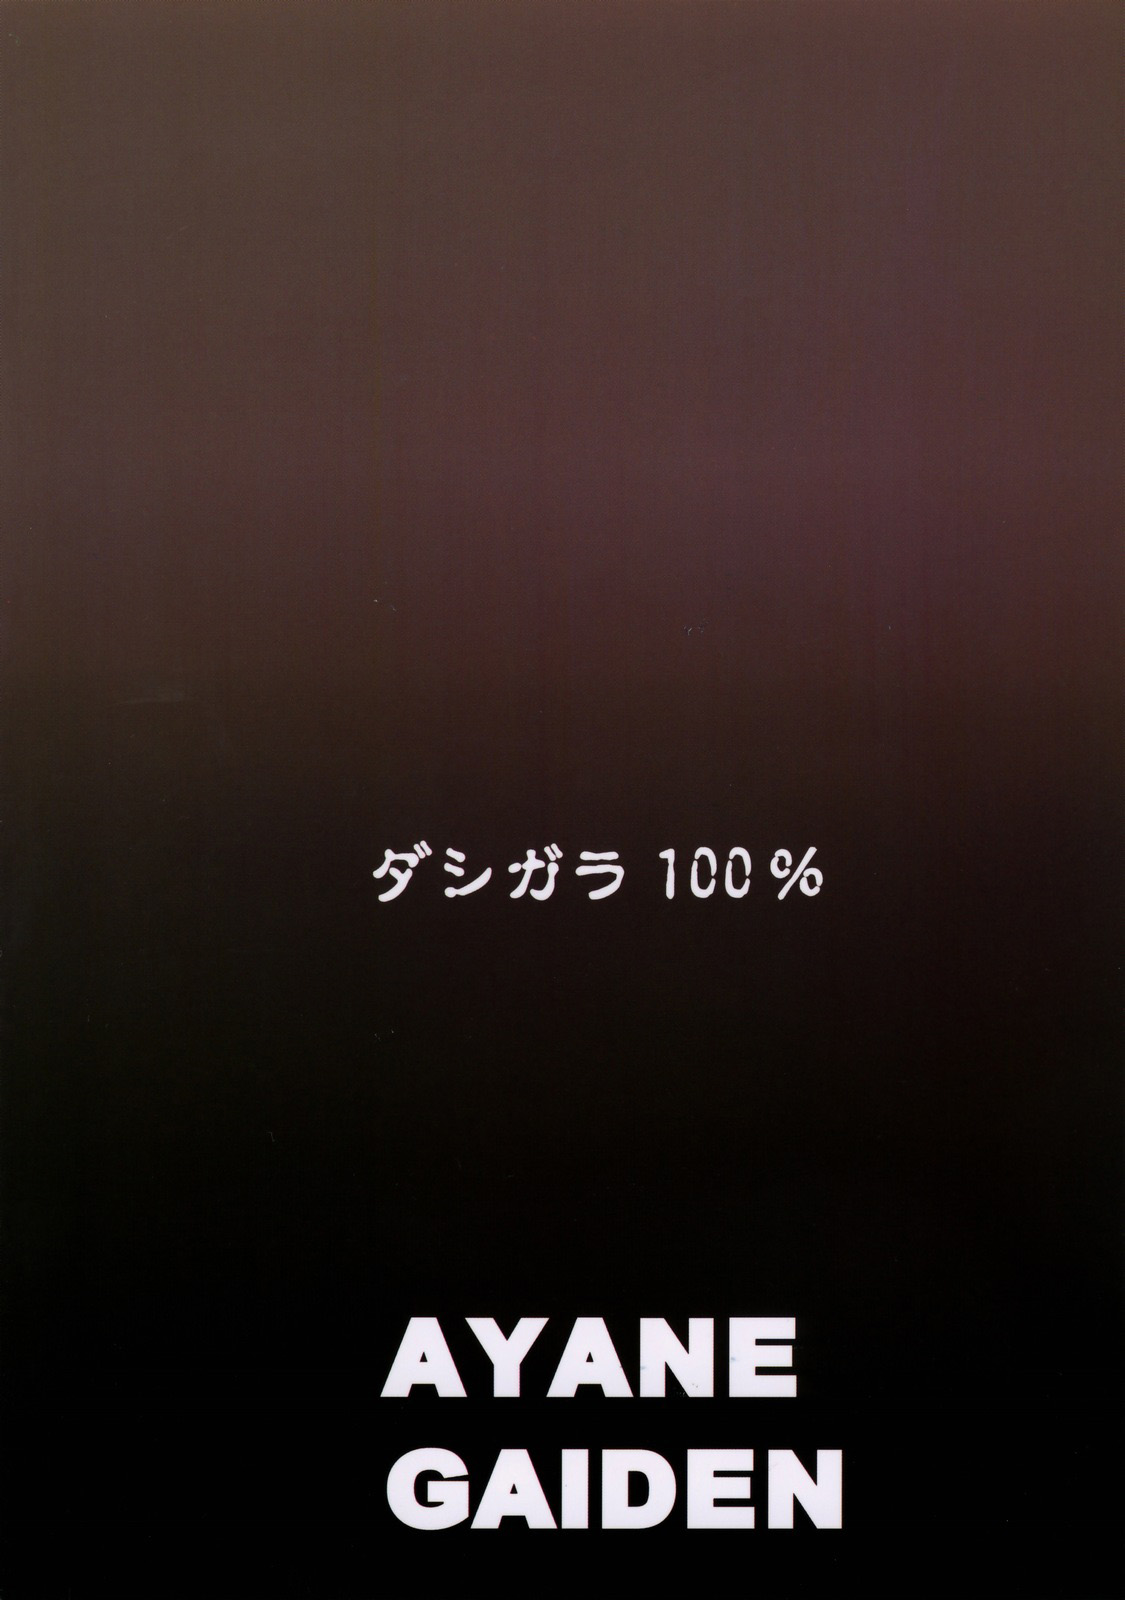 Ayane Gaiden numero d'image 30